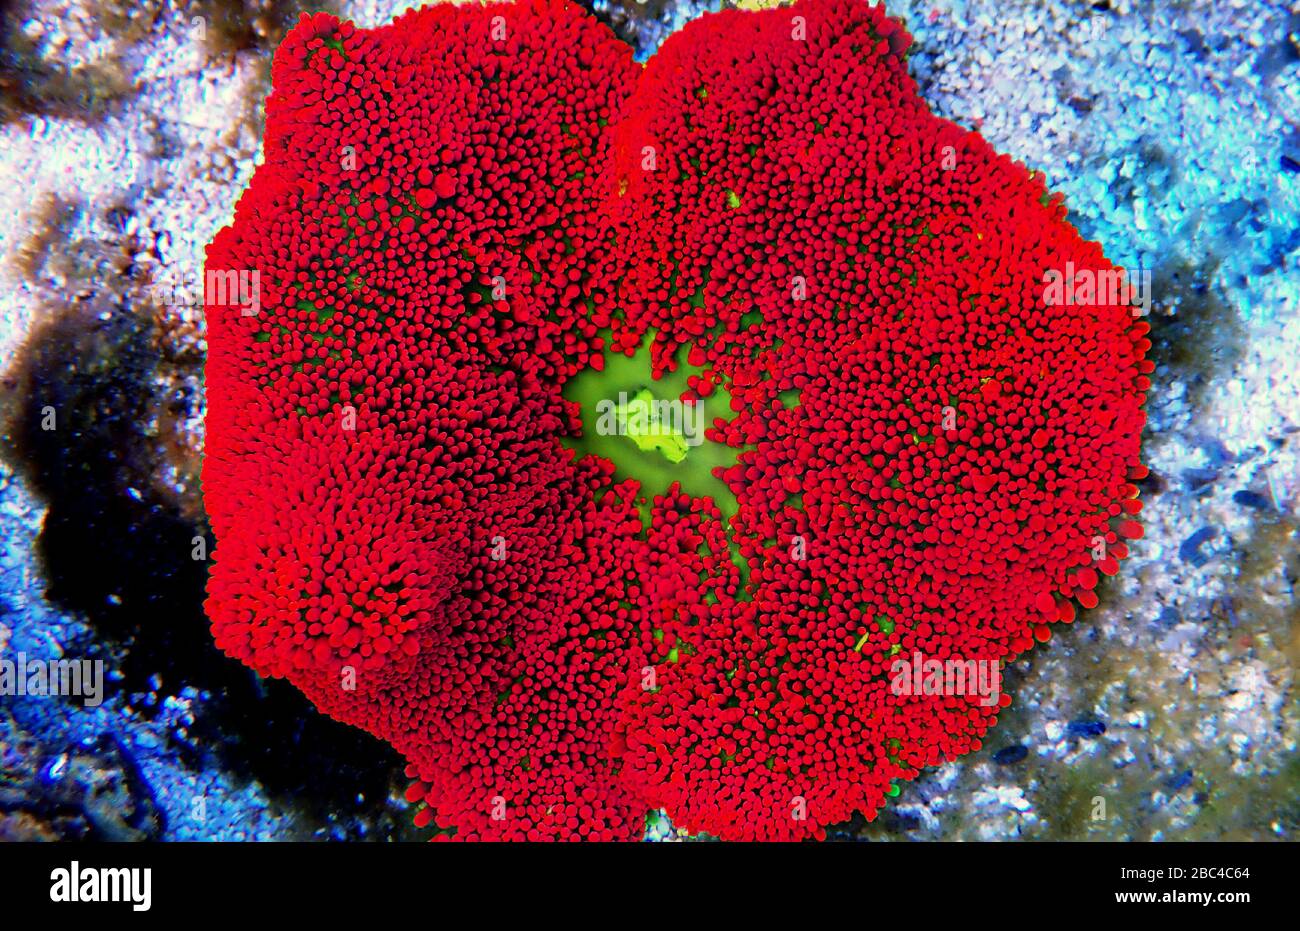 Red colorful carpet sea anemone - Stichodactyla haddoni Stock Photo